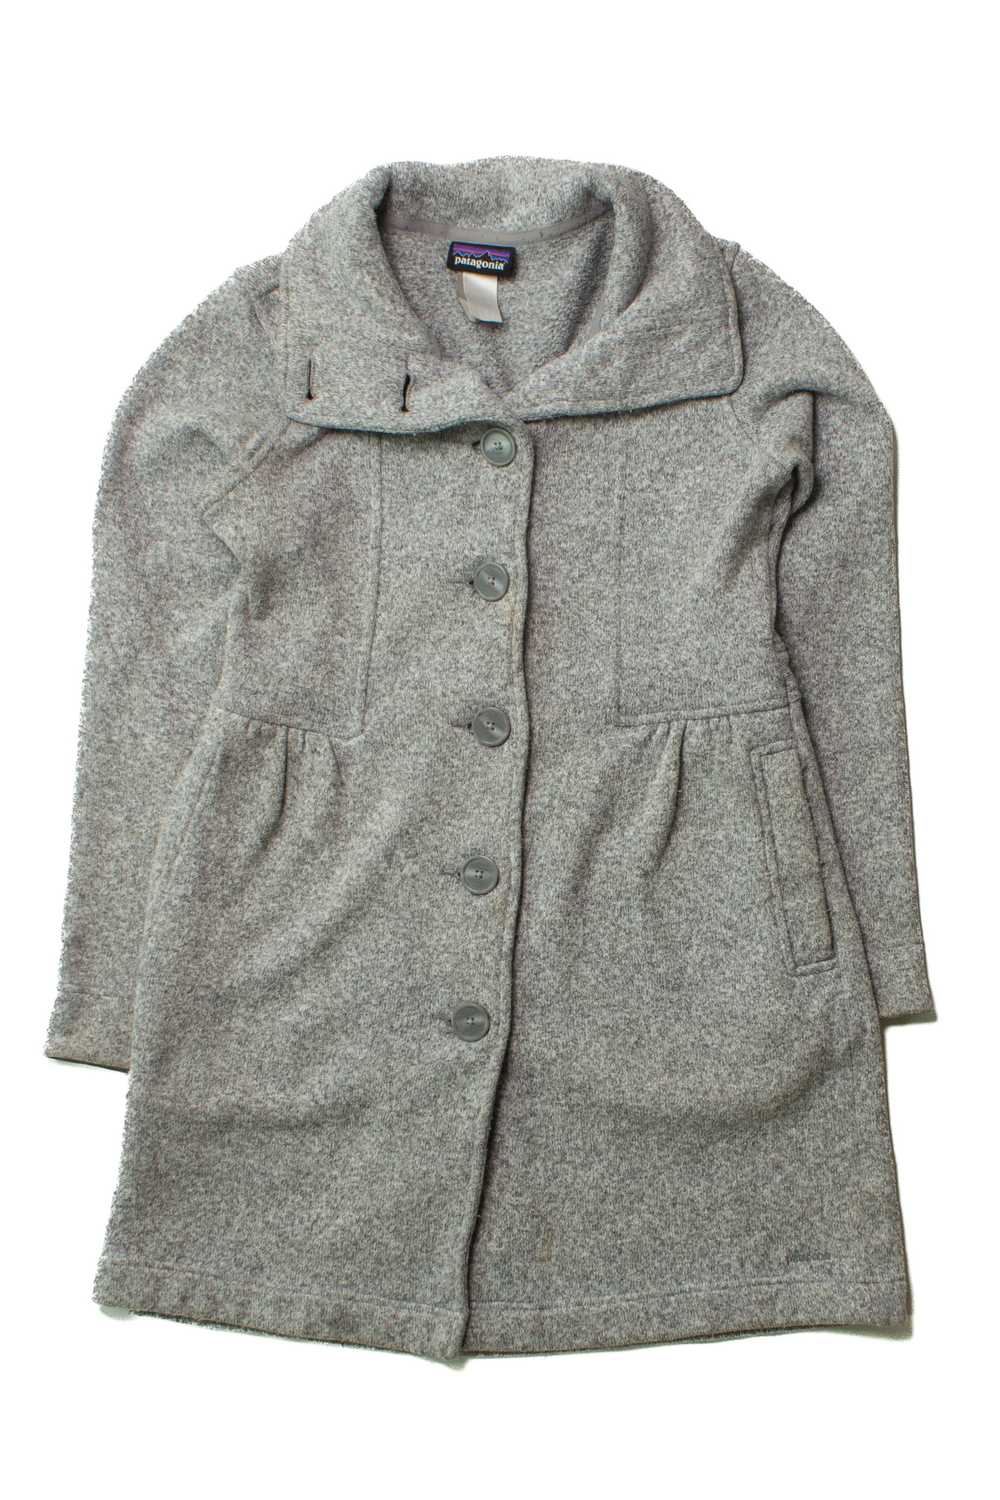 Gray Patagonia Coat (2000s) - image 1